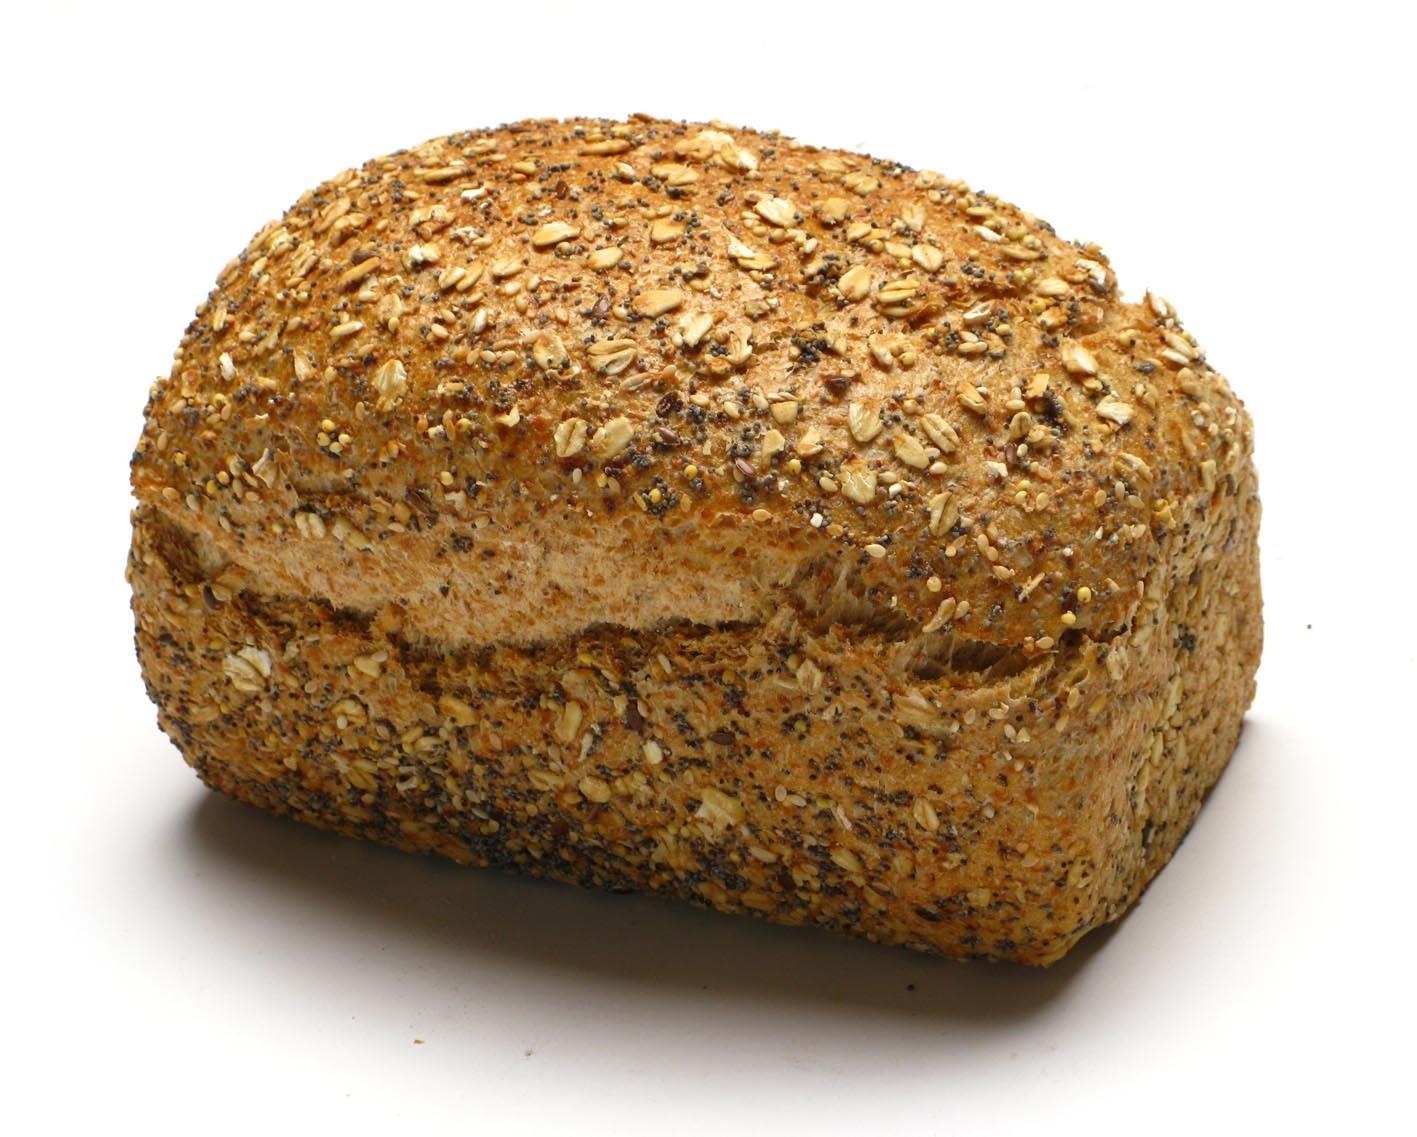 Pan de molde con semillas.